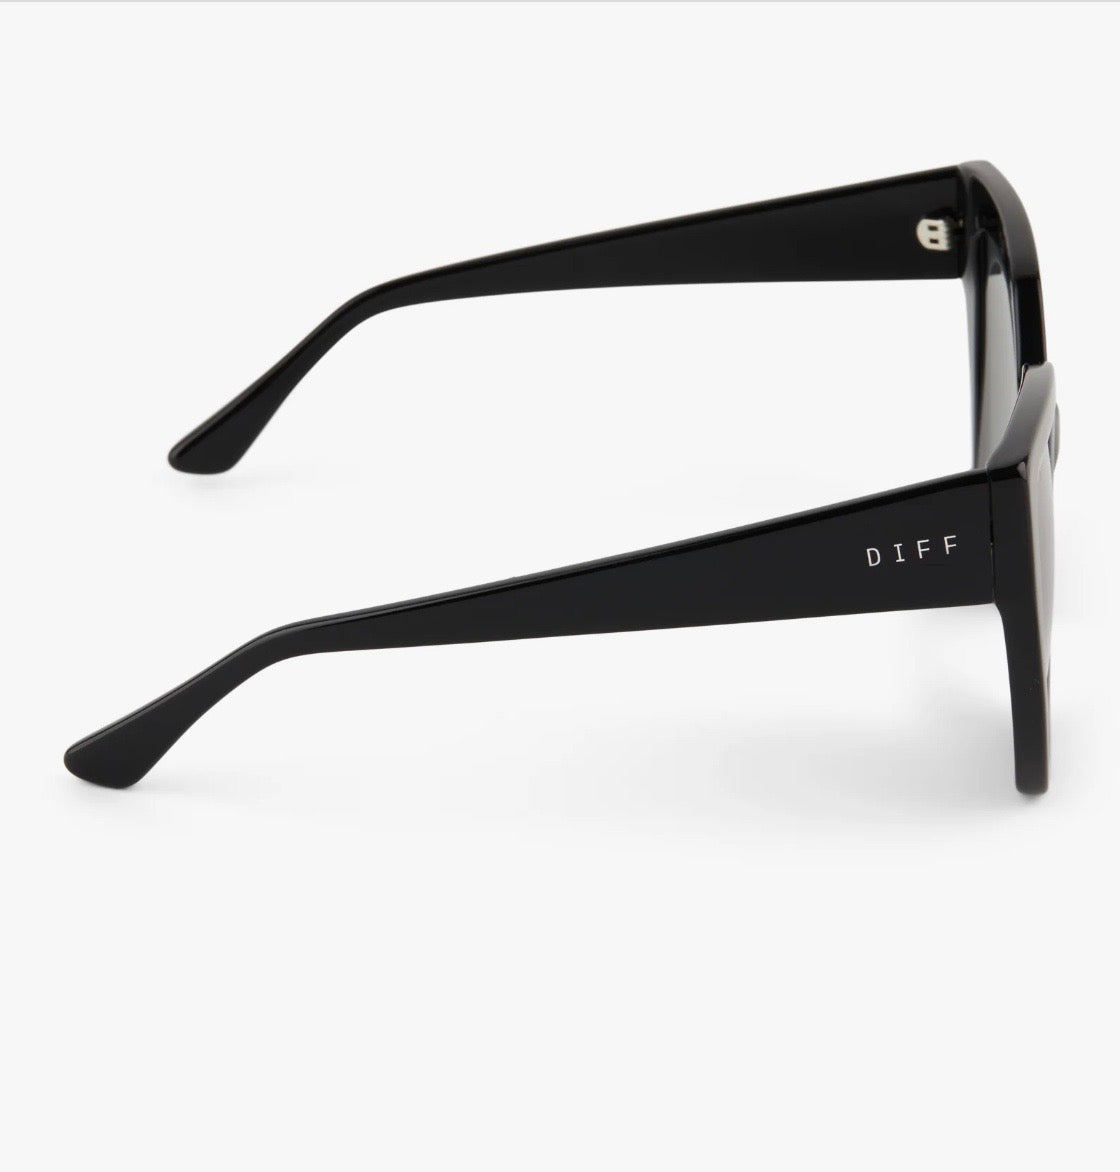 Blaire Black Grey Polarized Square Sunglasses